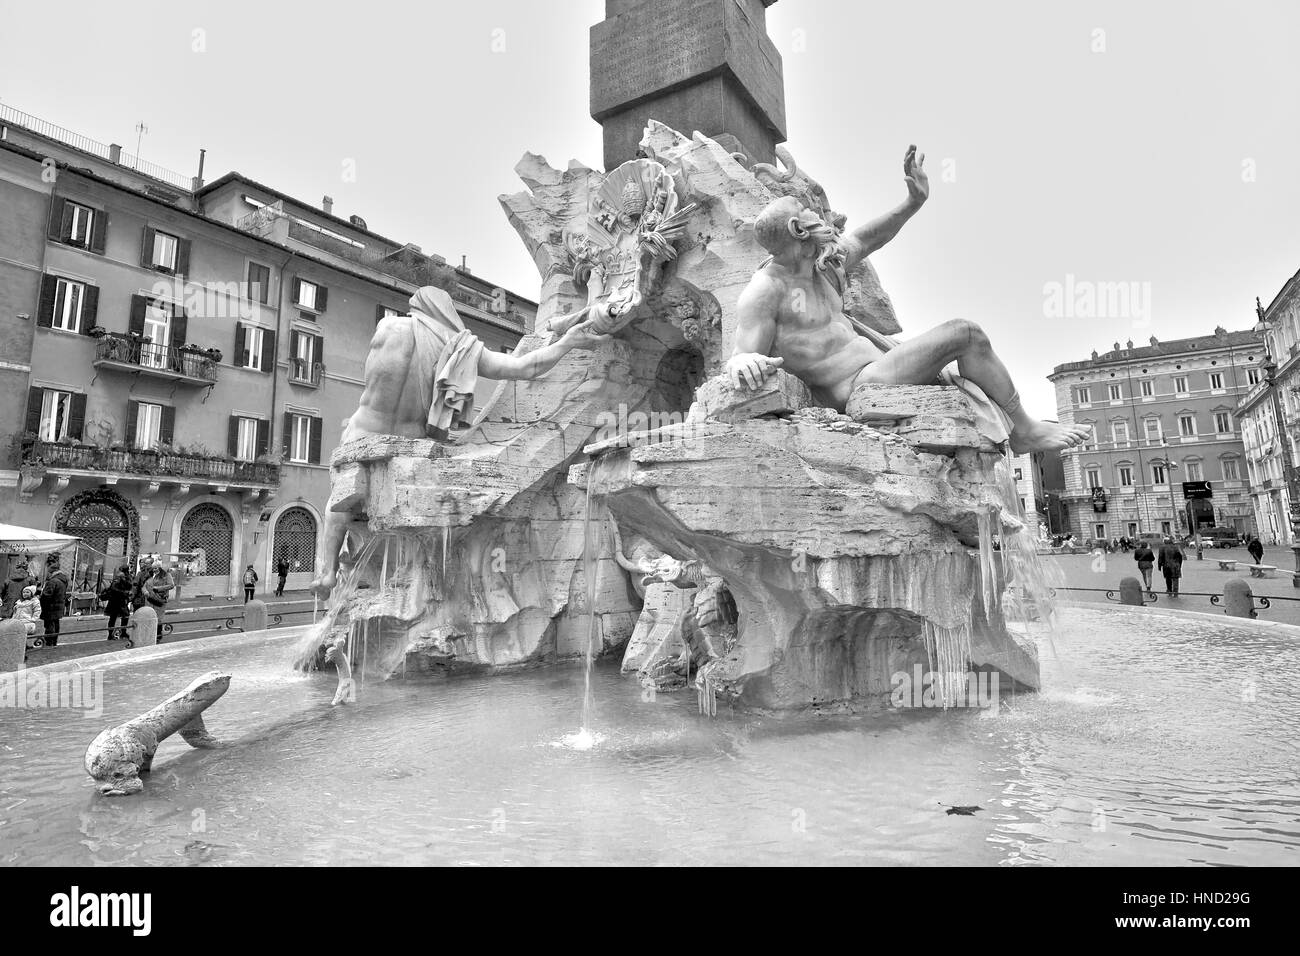 Rom, Italien - 8. Januar 2017: Fontana dei Fiumi und Sant'Agnese in Agone Fassade auf der Piazza Navona, Rom (Italien). Nicht identifizierte touristischen Enjoing der ar Stockfoto